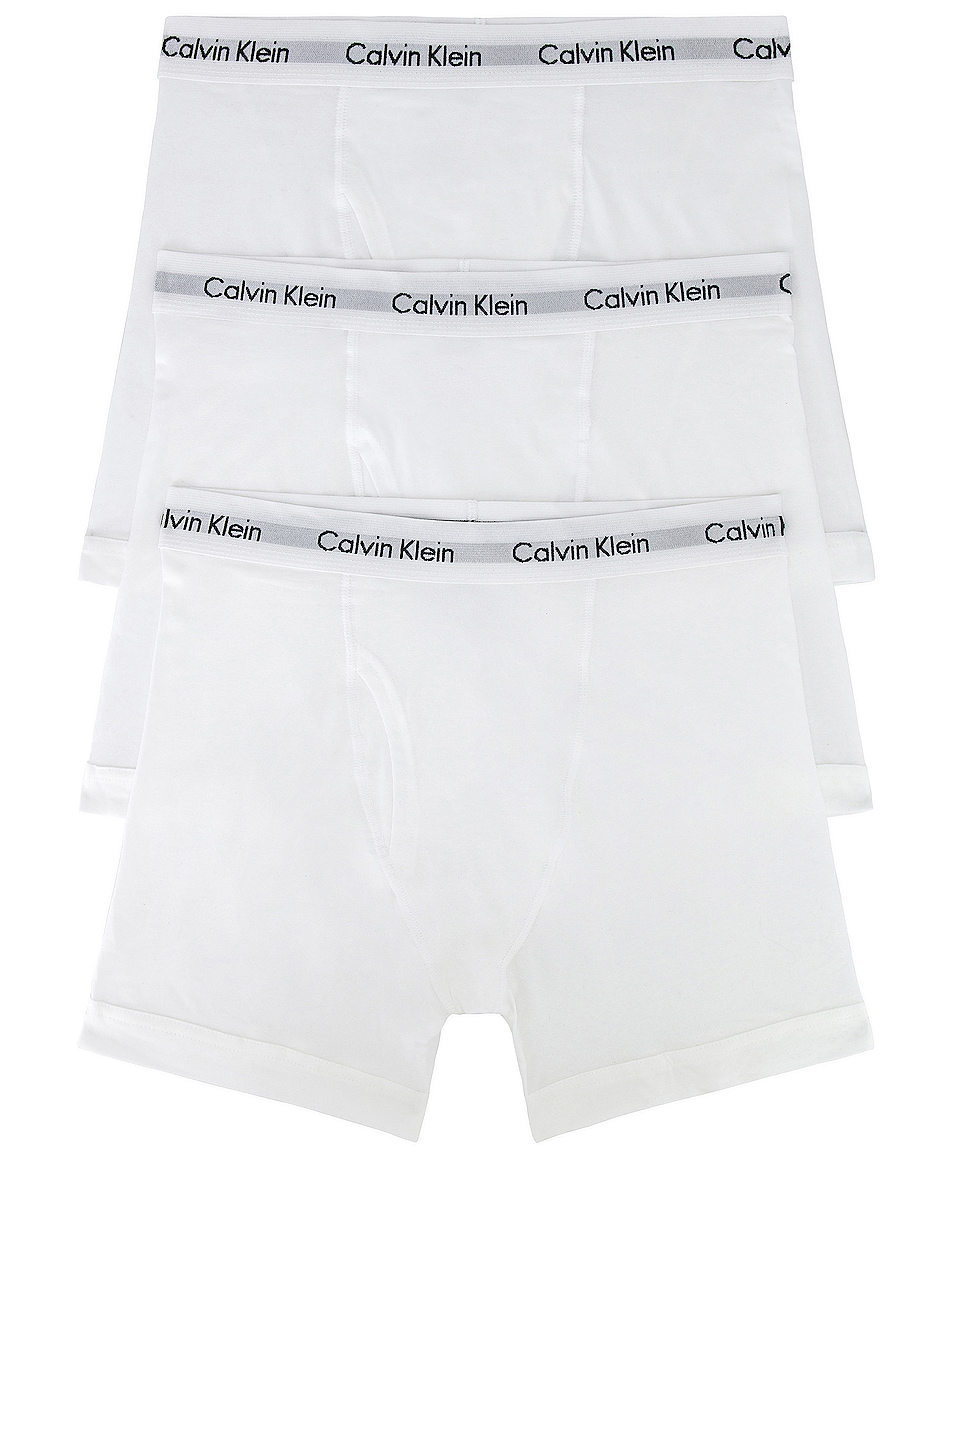 Image 1 of Calvin Klein Underwear Calvin Klein Boxer Brief 3 Piece Set in White